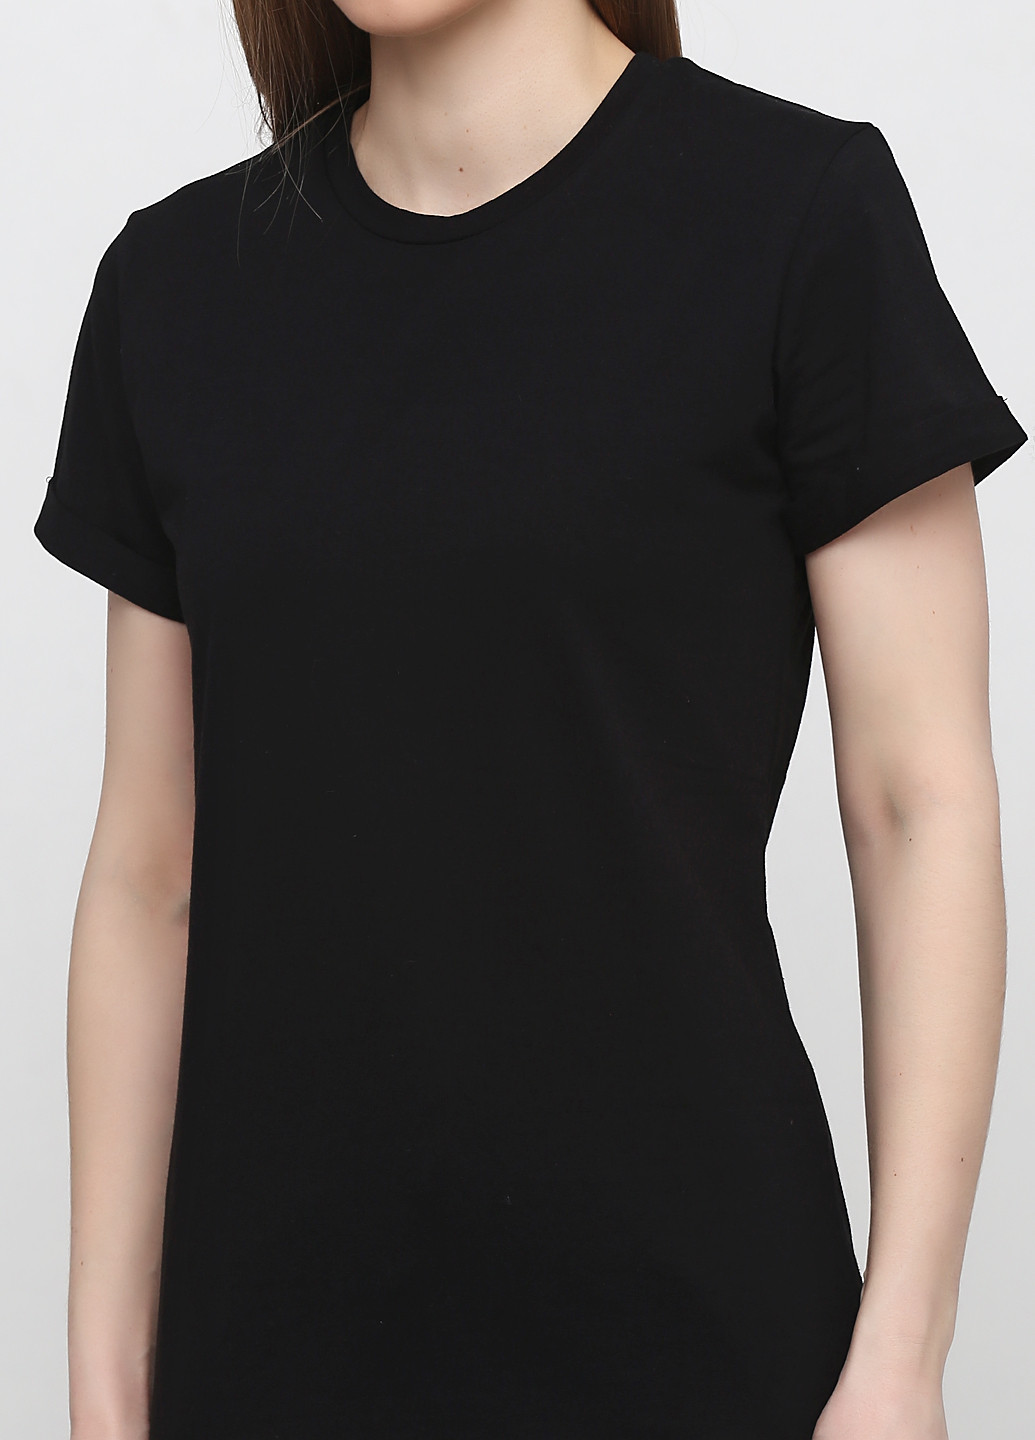 Черная летняя футболка женская 19ж441-24 черная с коротким рукавом Malta 19Ж441-24 чорна